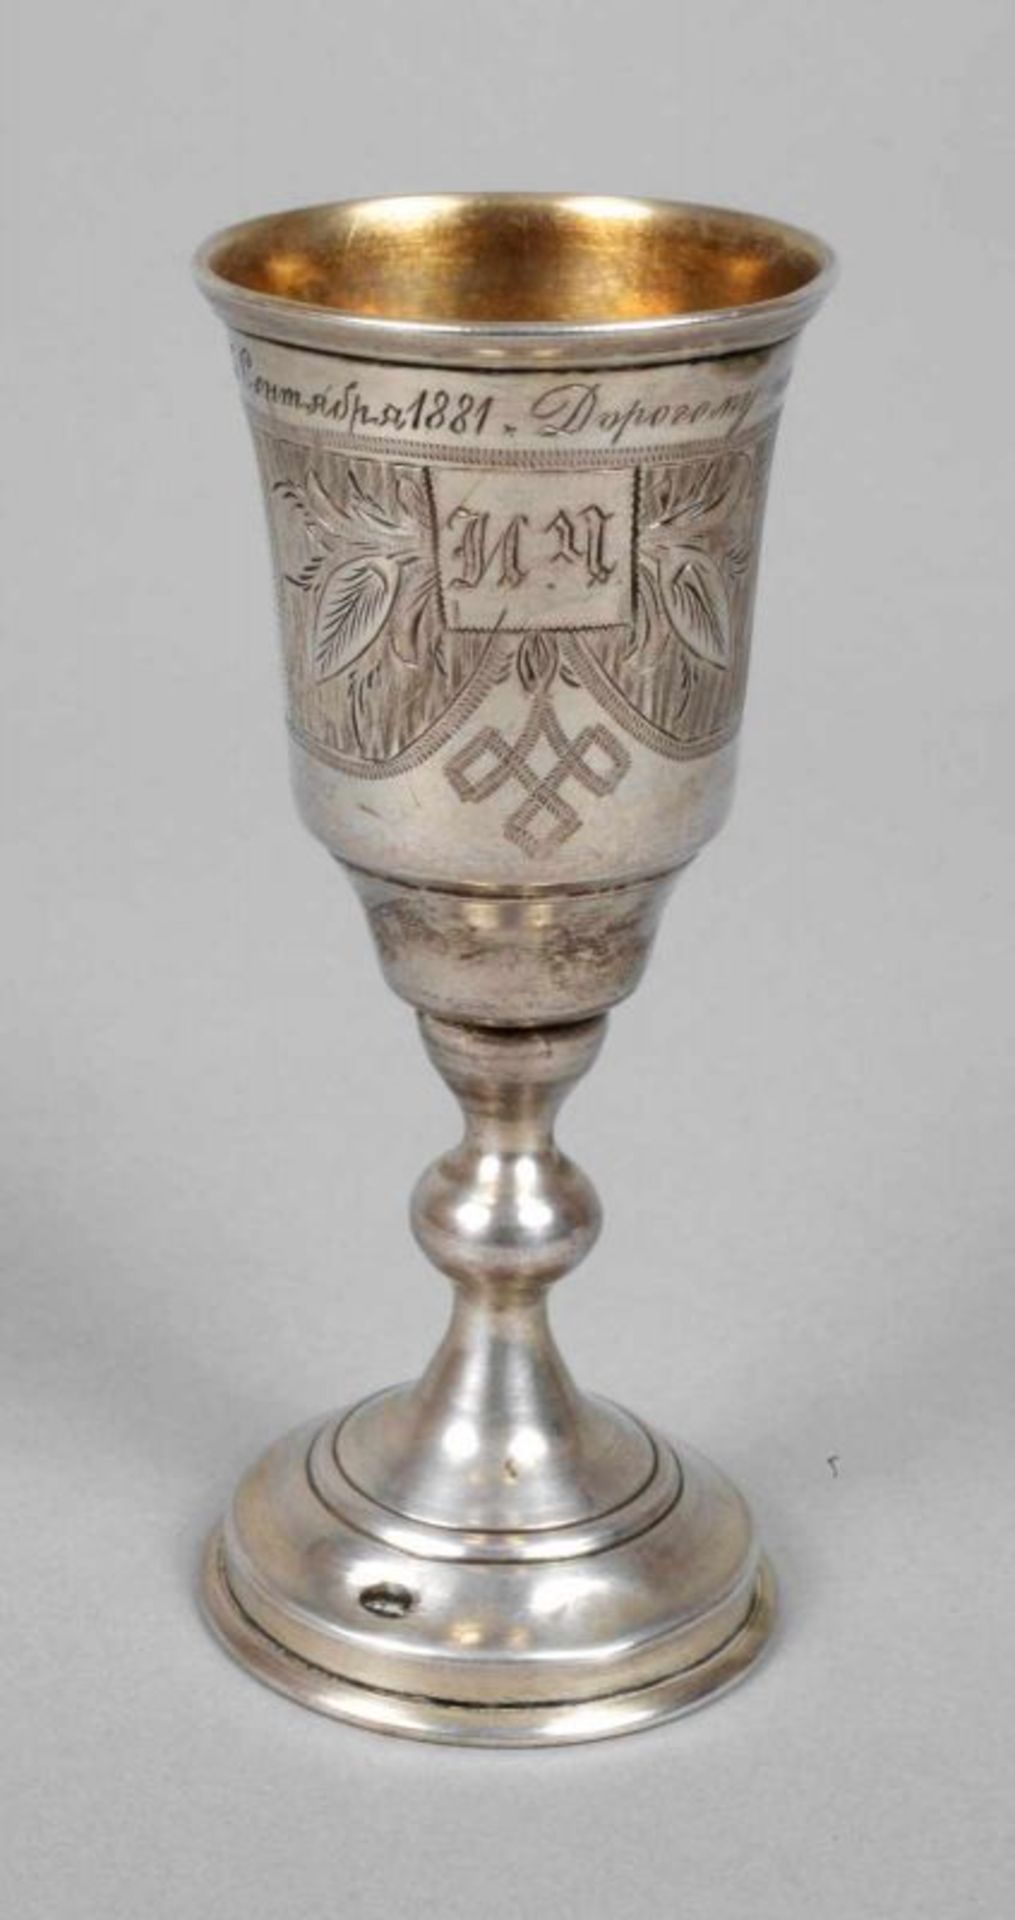 Wodkabecher Silber datiert 1881, Meisterpunze A.M., gestempelt 84 Zolotniki, innen vergoldet,